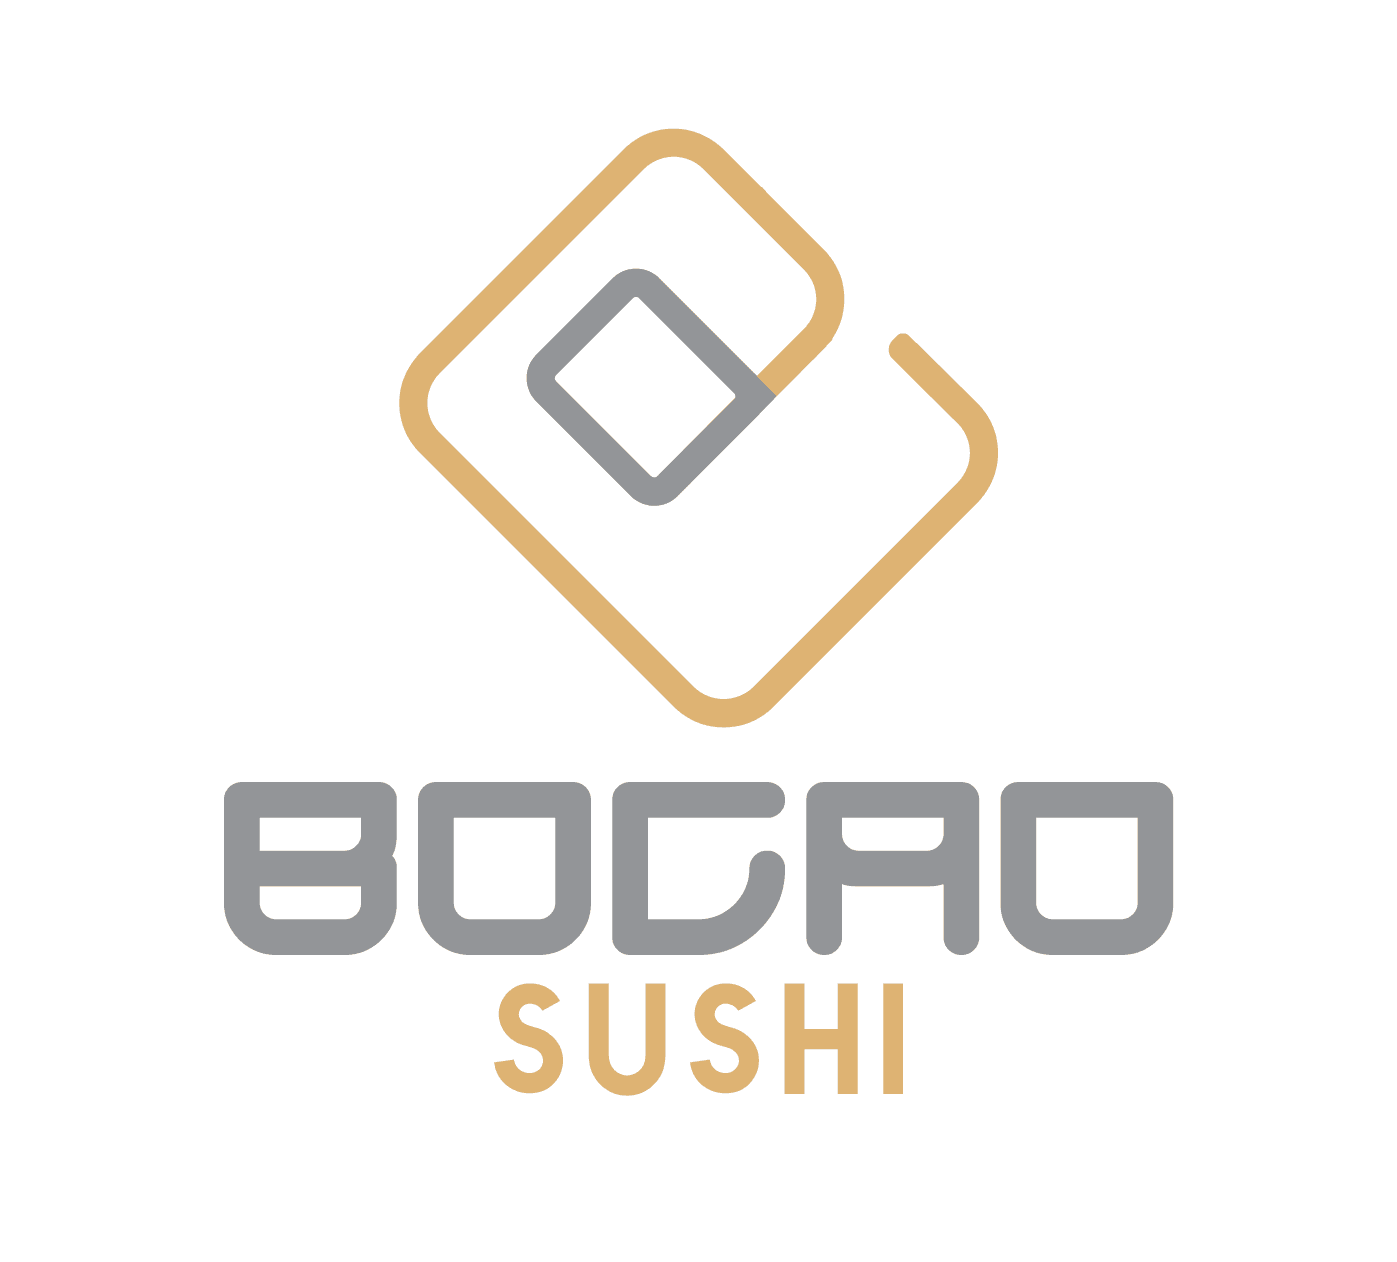 Bocao sushi